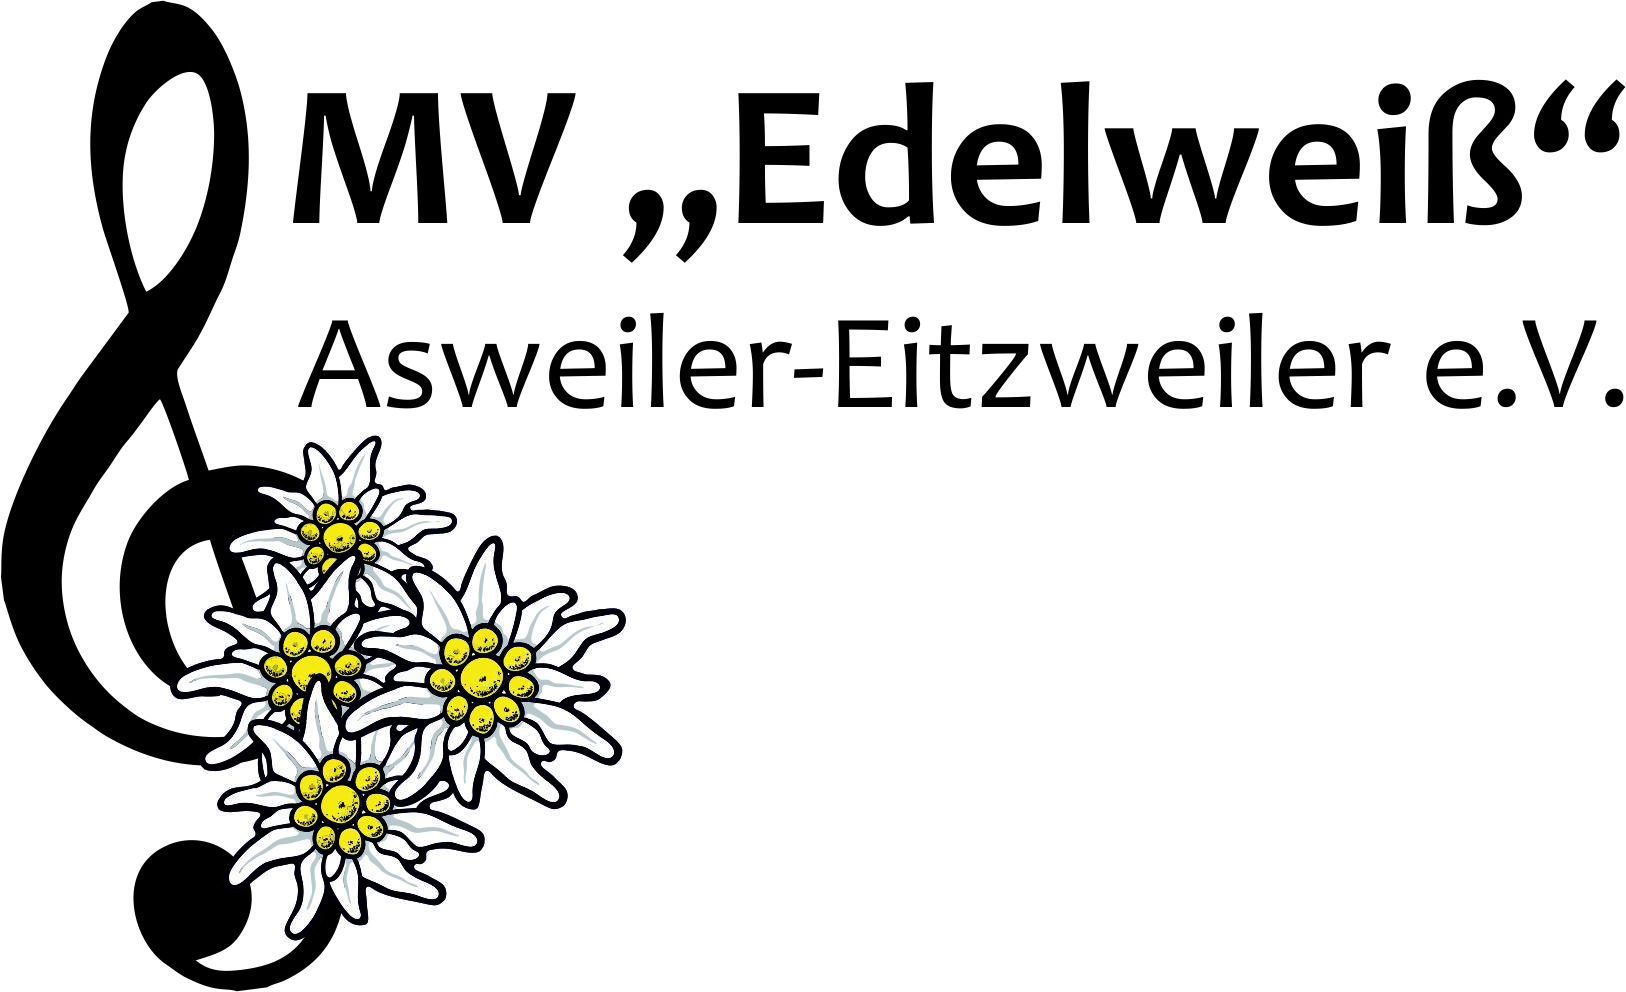 Profilbild des Vereins Musikverein "Edelweiß" Asweiler-Eitzweiler e.V.